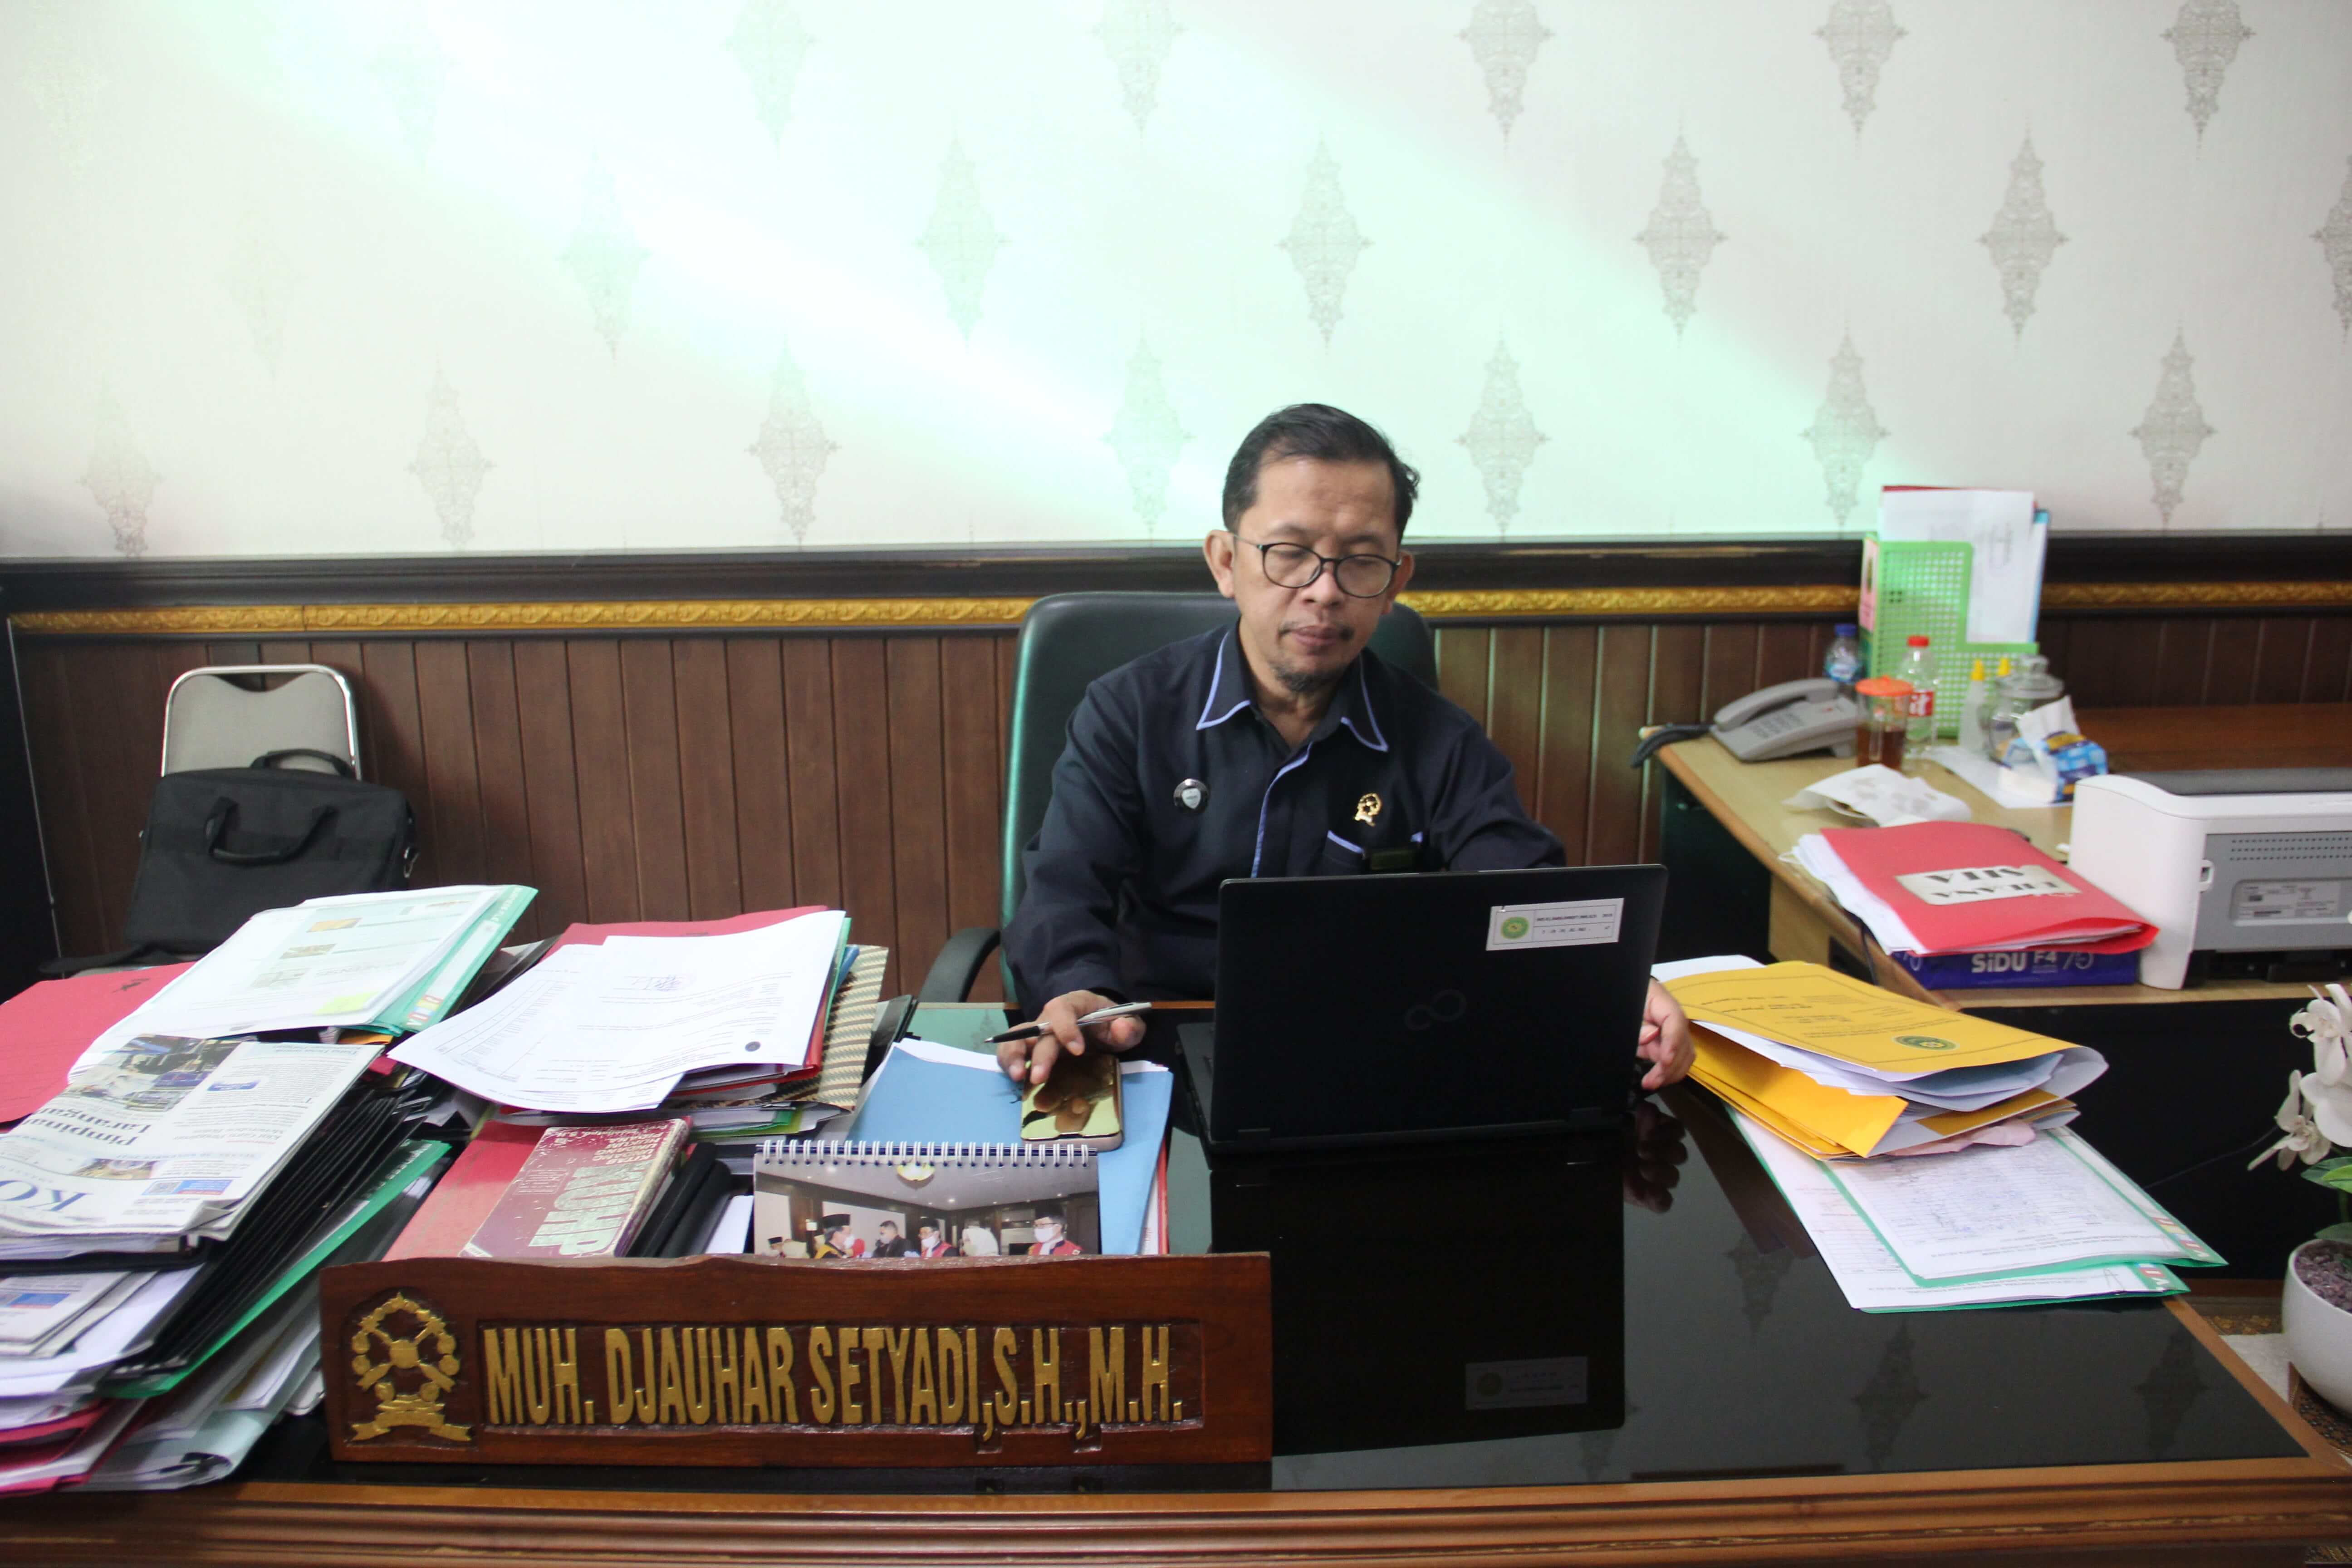 Wakil Ketua Pengadilan Negeri Yogyakarta Mengikuti Koordinasi dan Sosialisasi Kegiatan Magang dan KKN Tematik dengan Mitra bersama Fakultas Hukum Janabadra